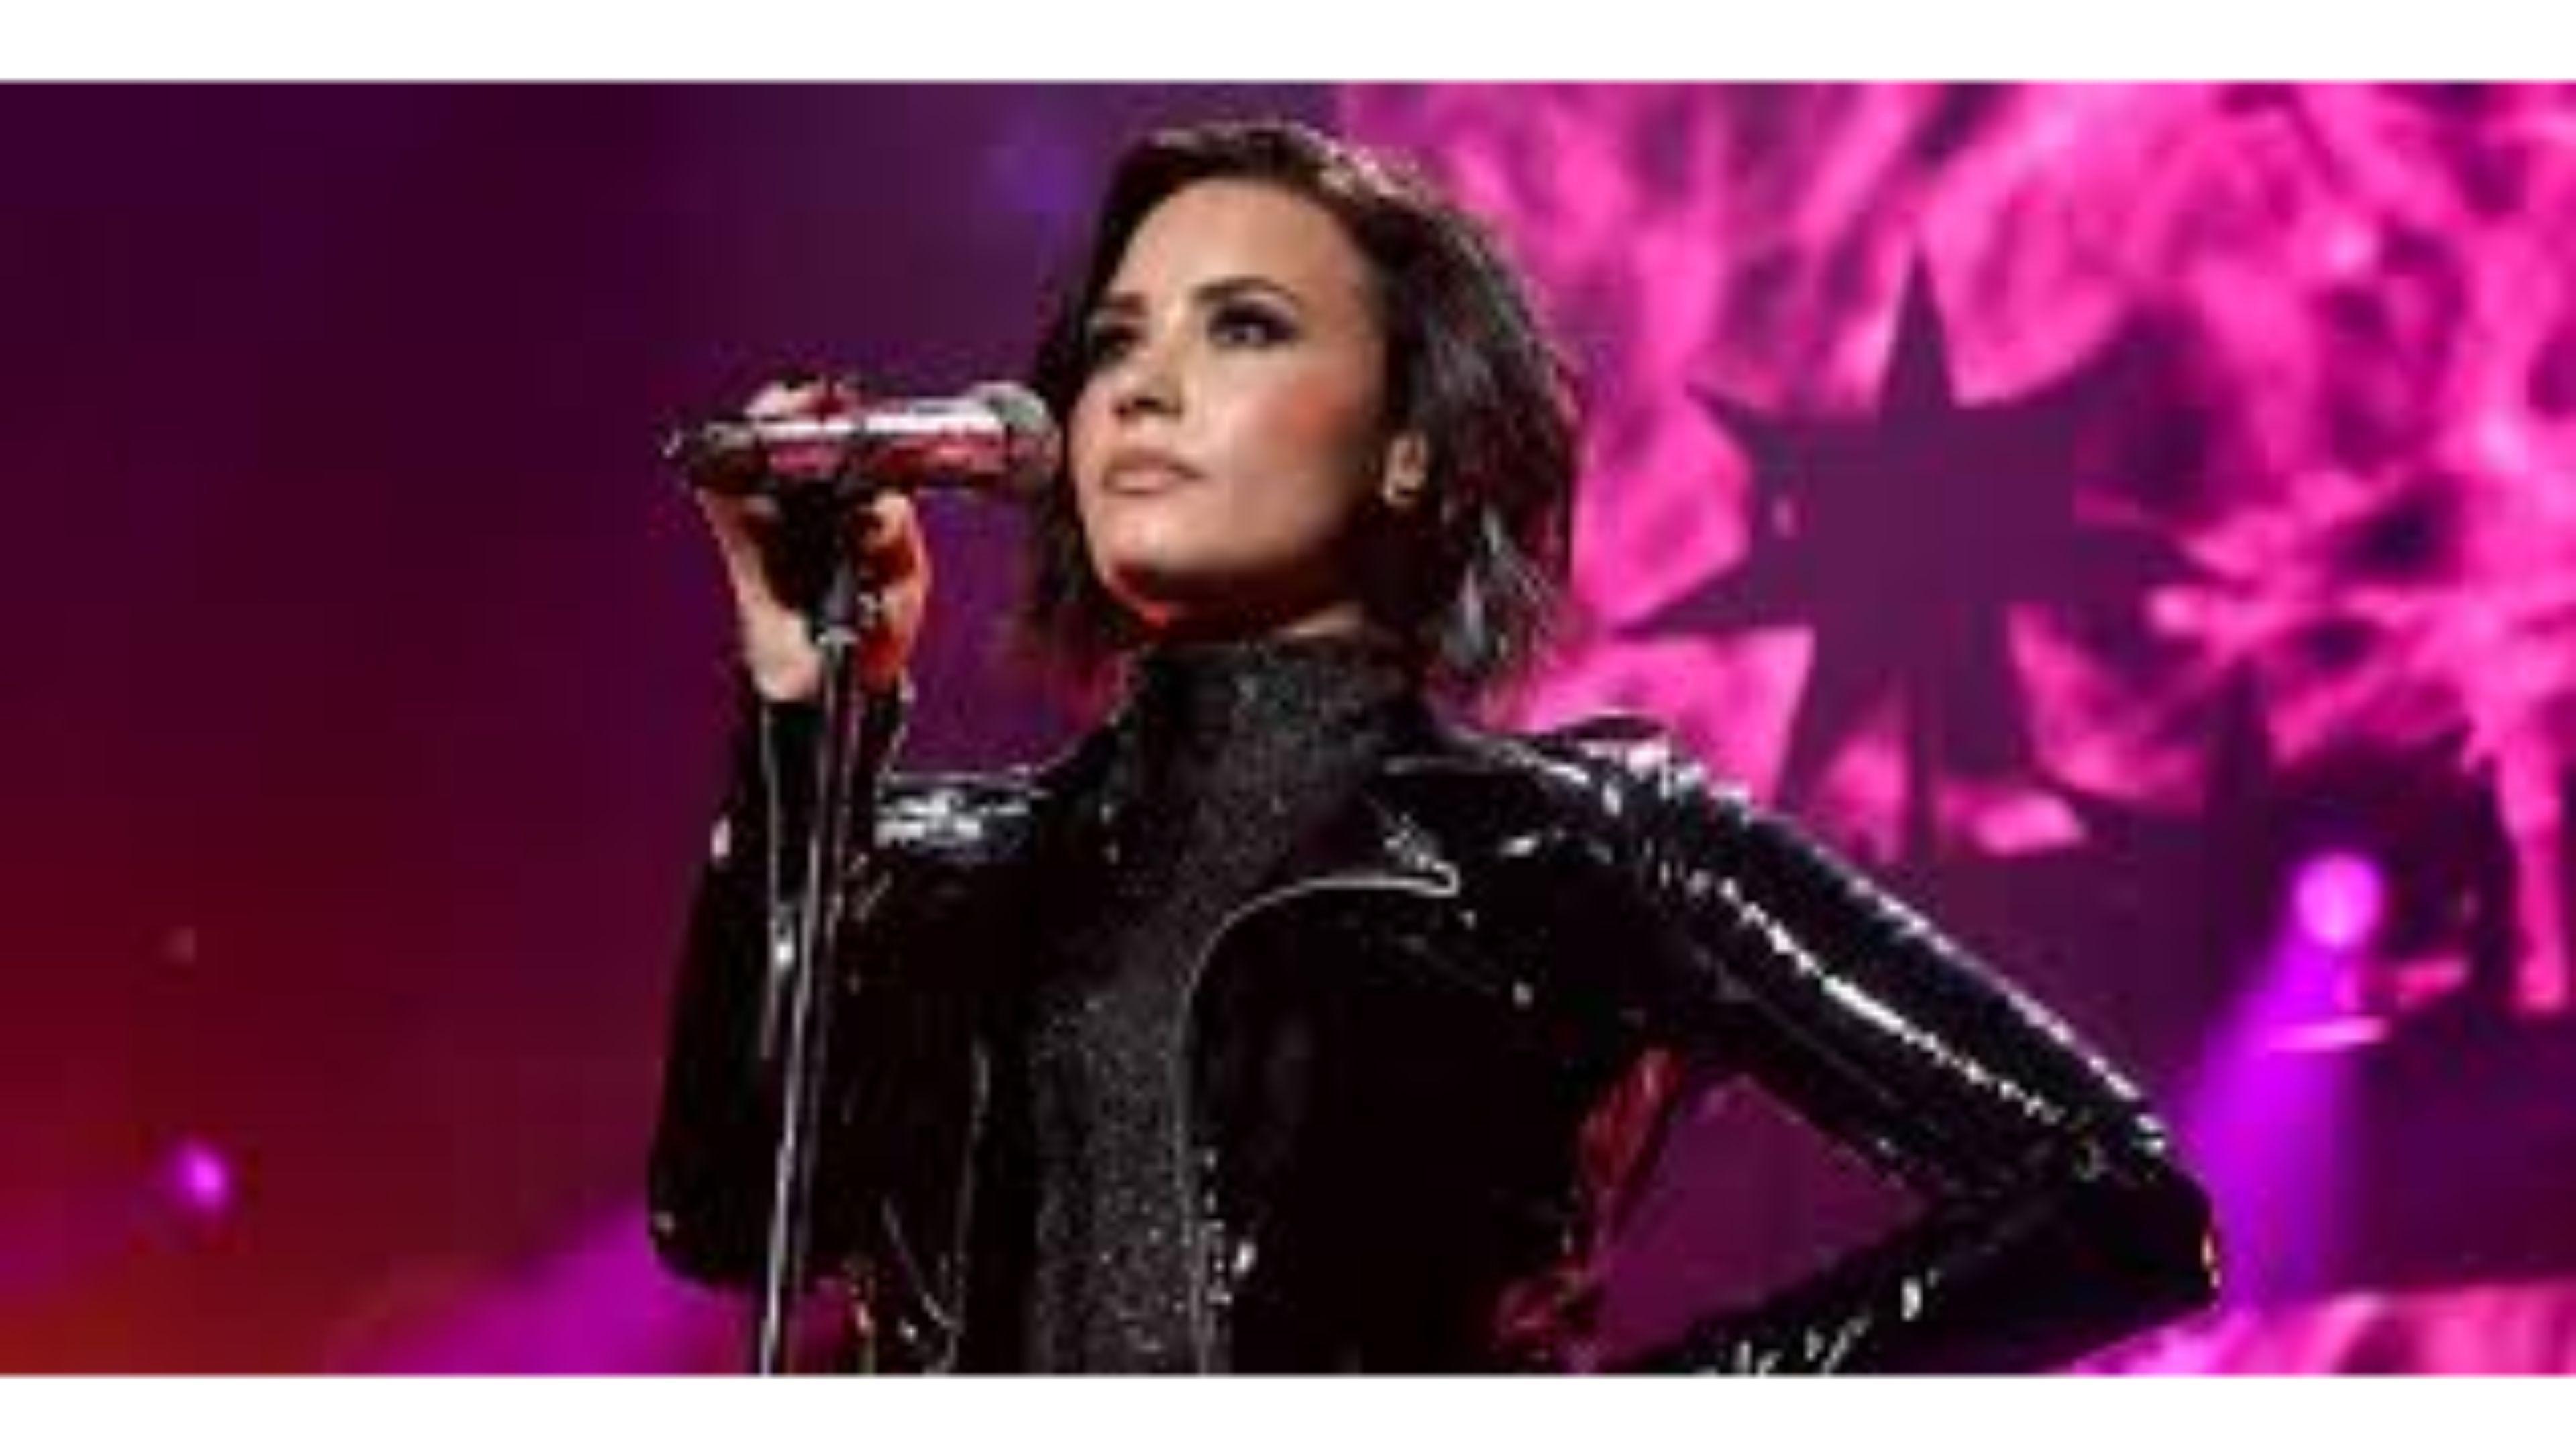 Singer Celebrity 4K Demi Lovato Wallpaper. Free 4K Wallpaper